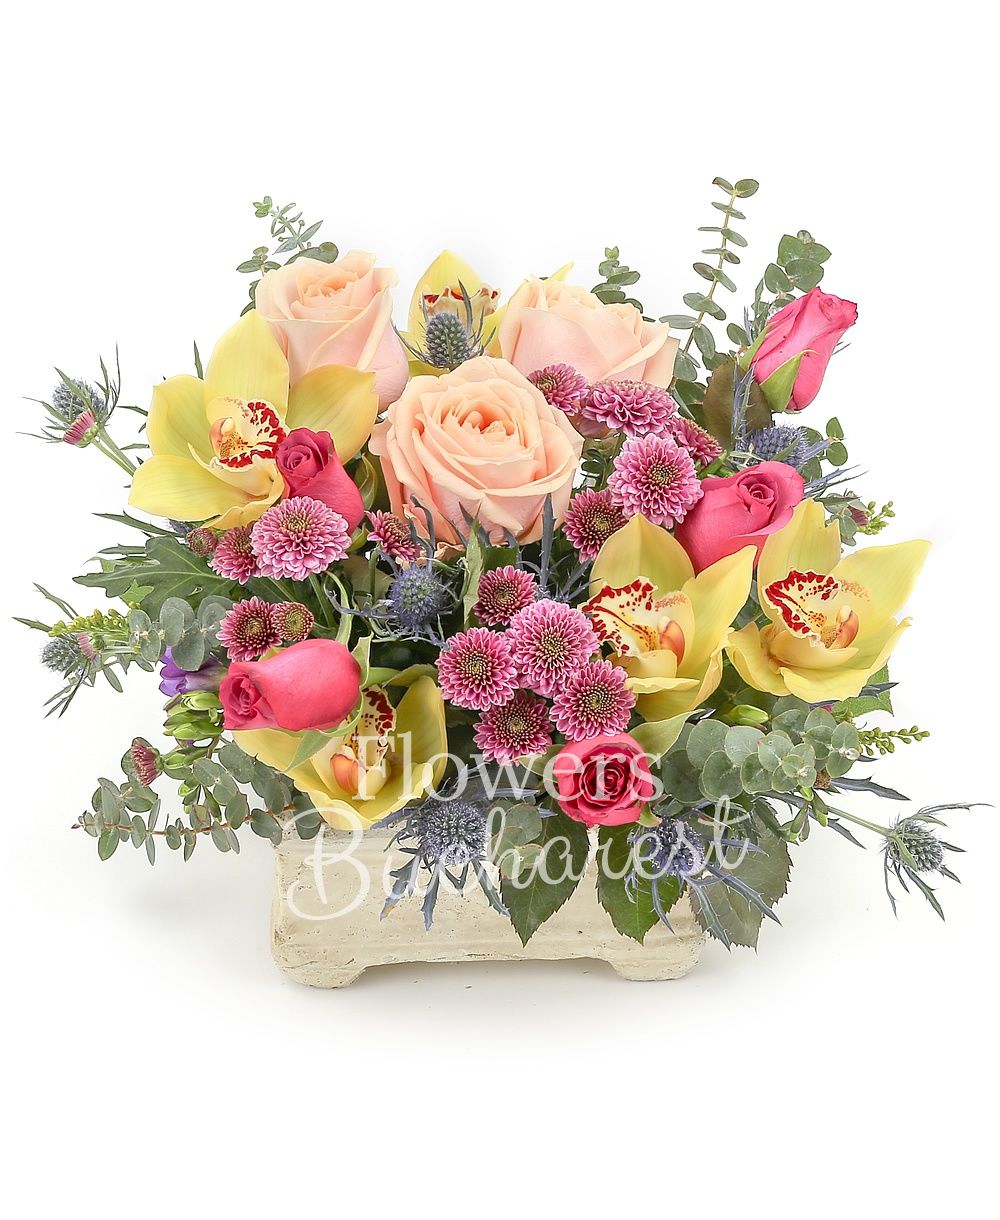 3 peach roses, 5 cyclam roses, 3 pink santini, 3 blue eryngium, yellow cymbidium, greenery